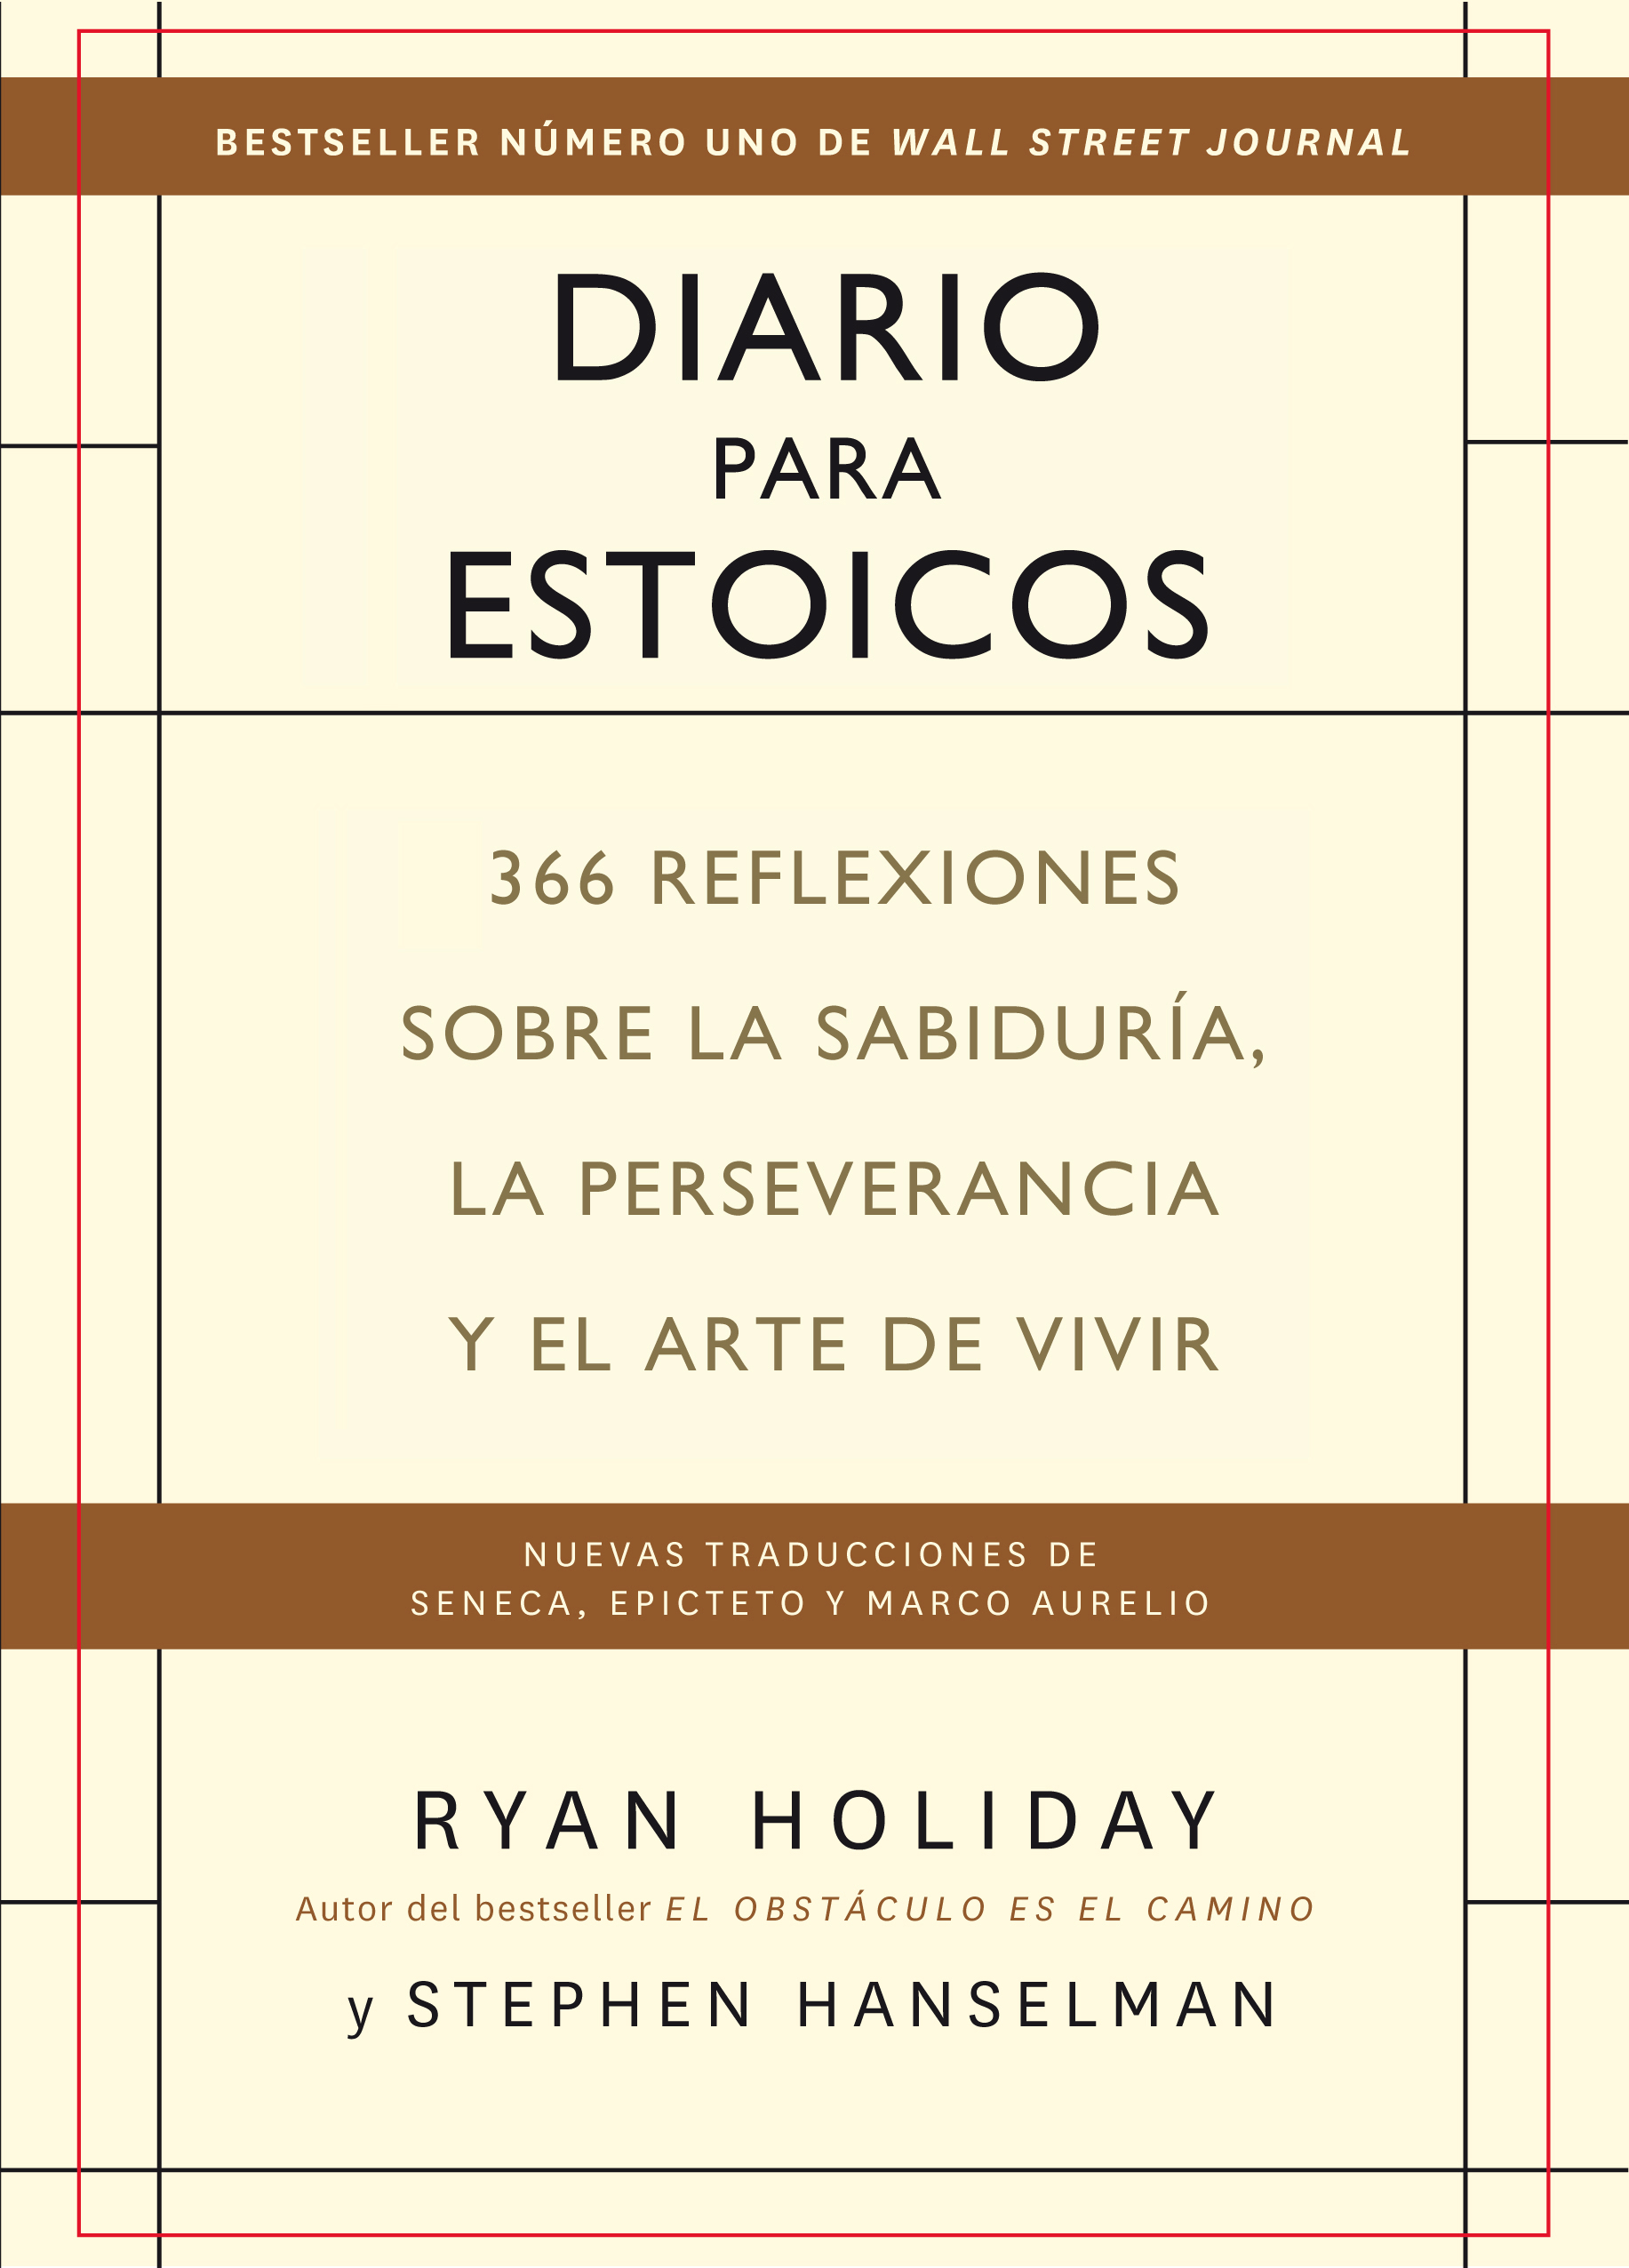 Diario para estoicos   «366 reflexiones sobre la sabiduría, la perseverancia  y el arte de vivir»